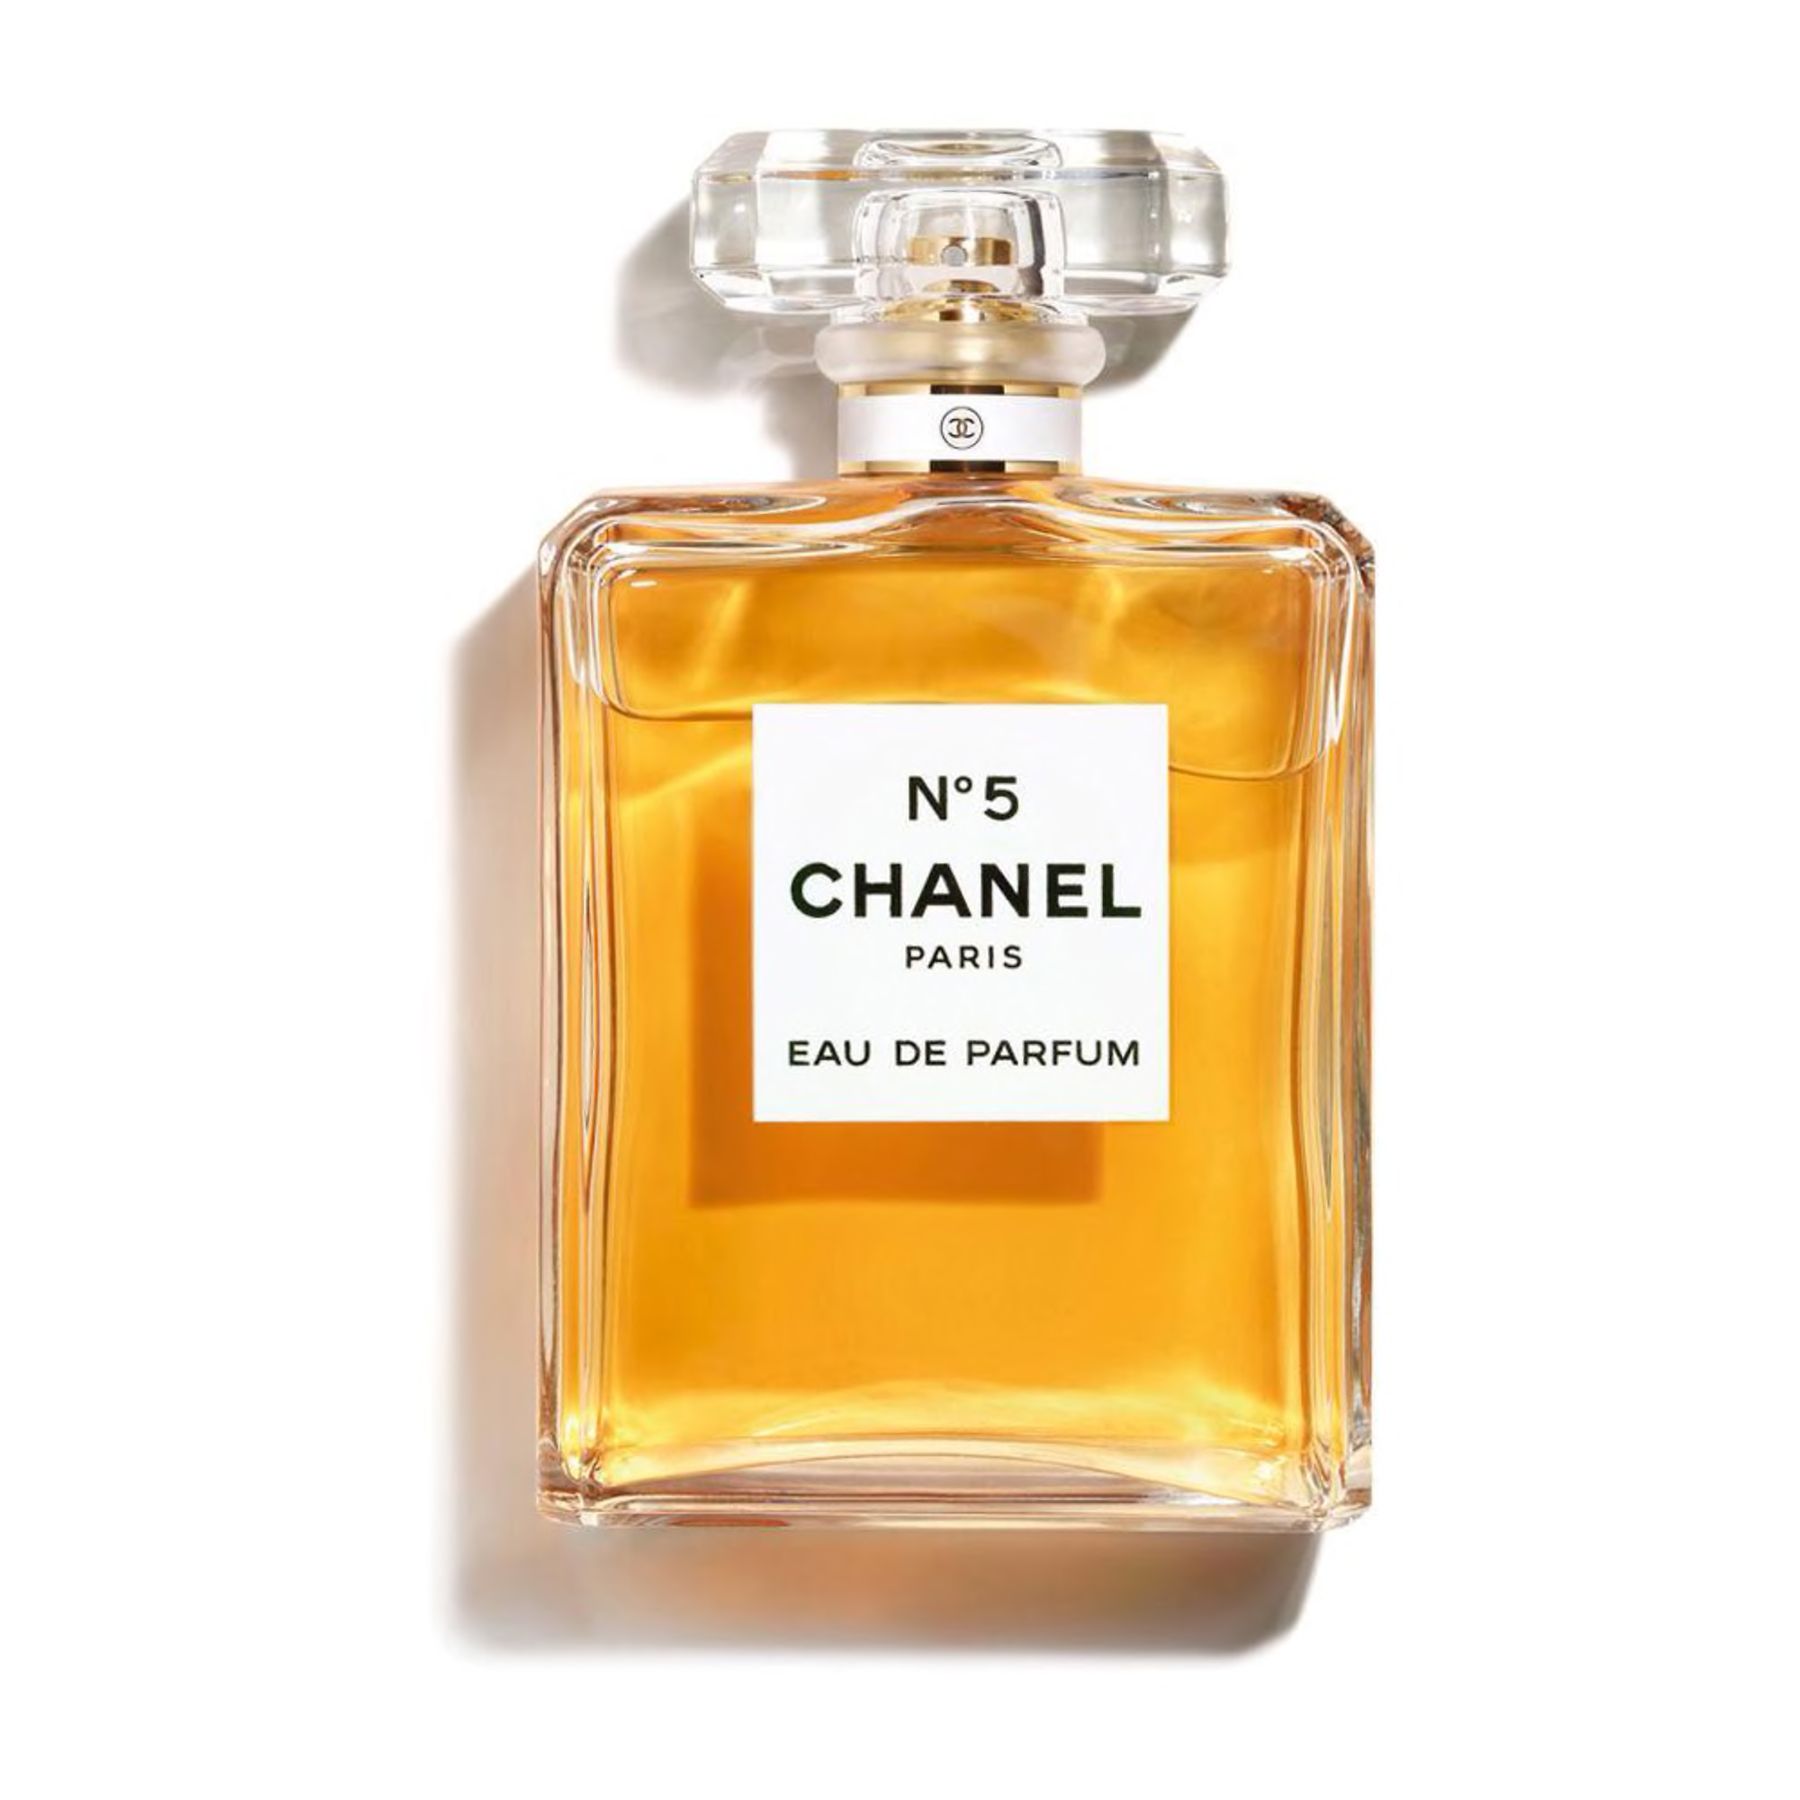 Bestu gjafirnar fyrir ömmu - Chanel nr. 5 Eau de Parfum